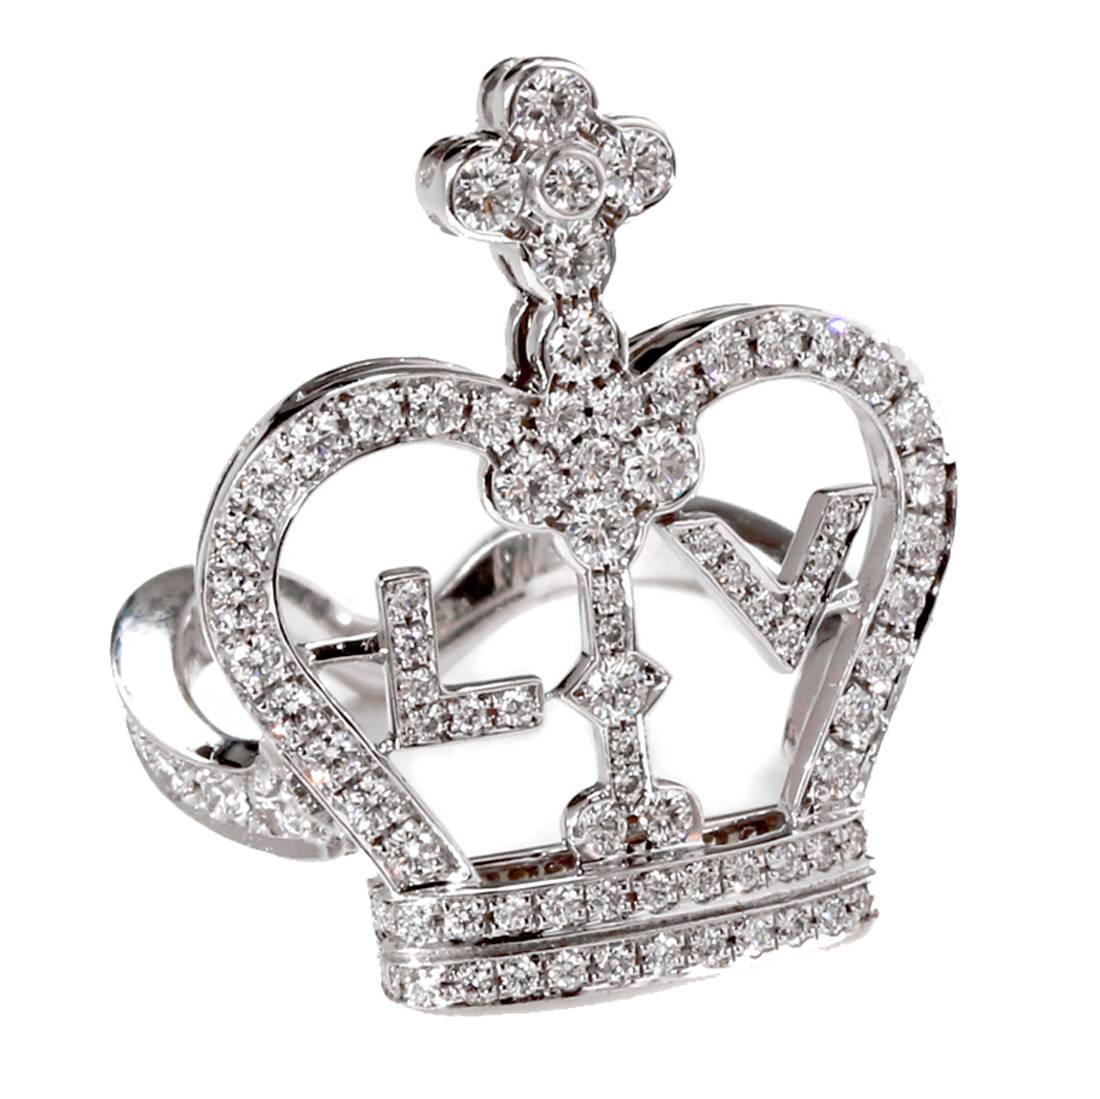 Louis Vuitton, bague couronne en or et diamants